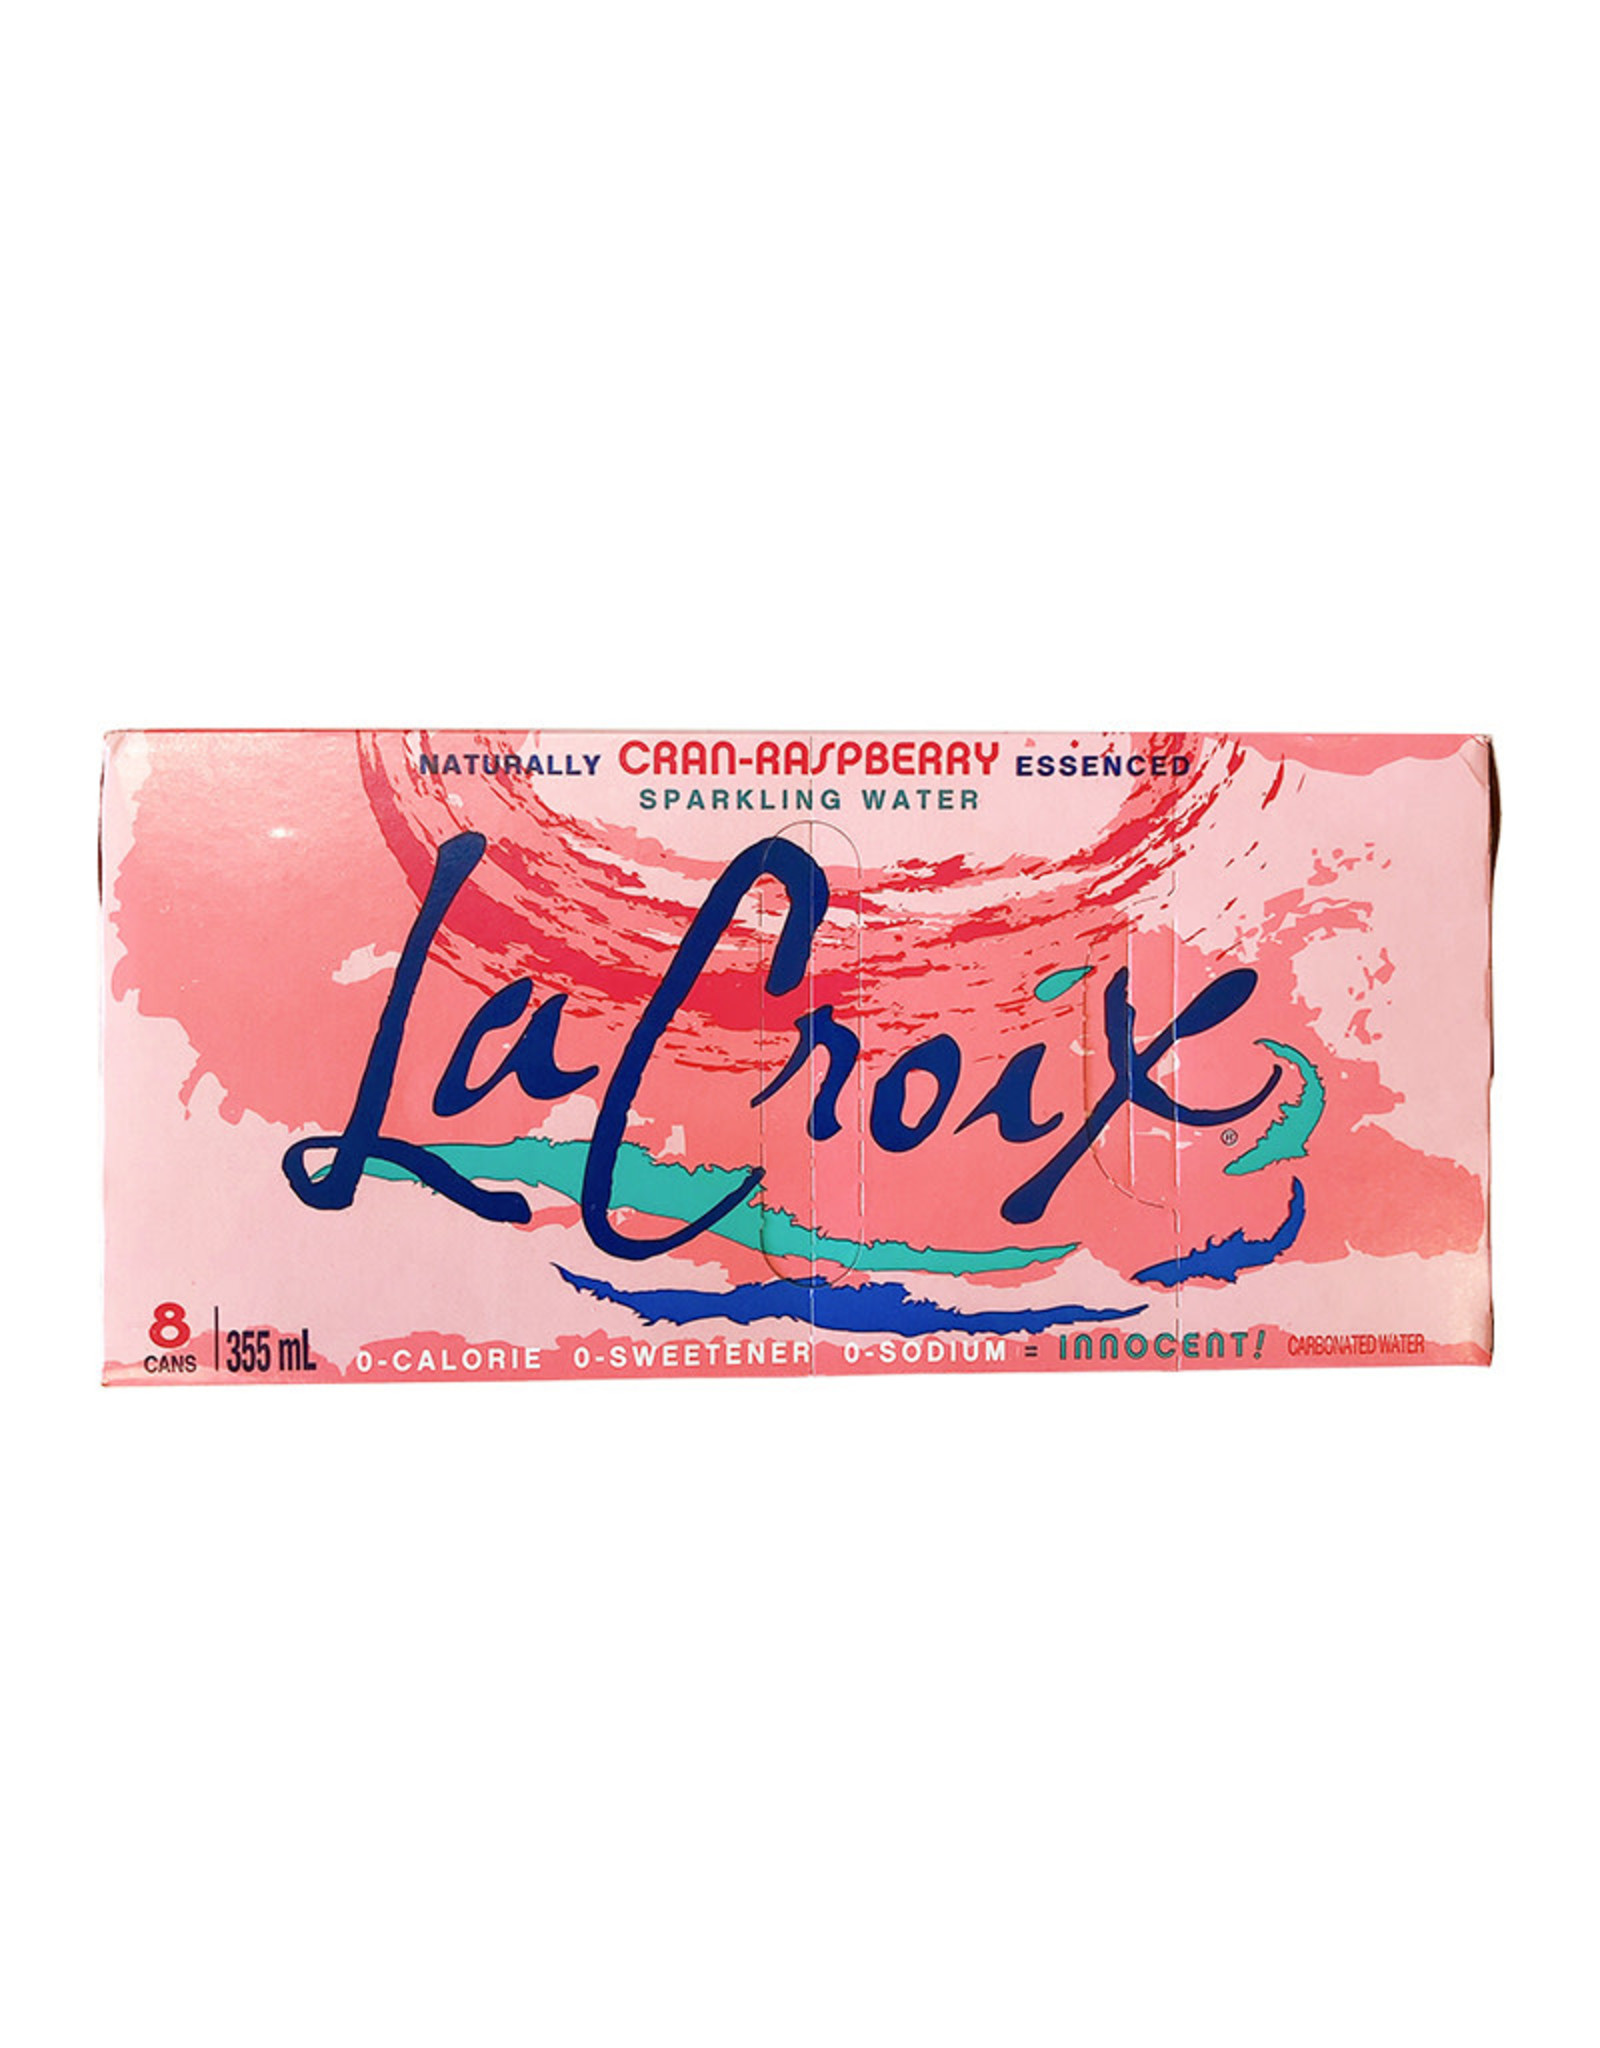 LaCroix LaCroix - Sparkling Water, Cran-Raspberry (8 Pack)